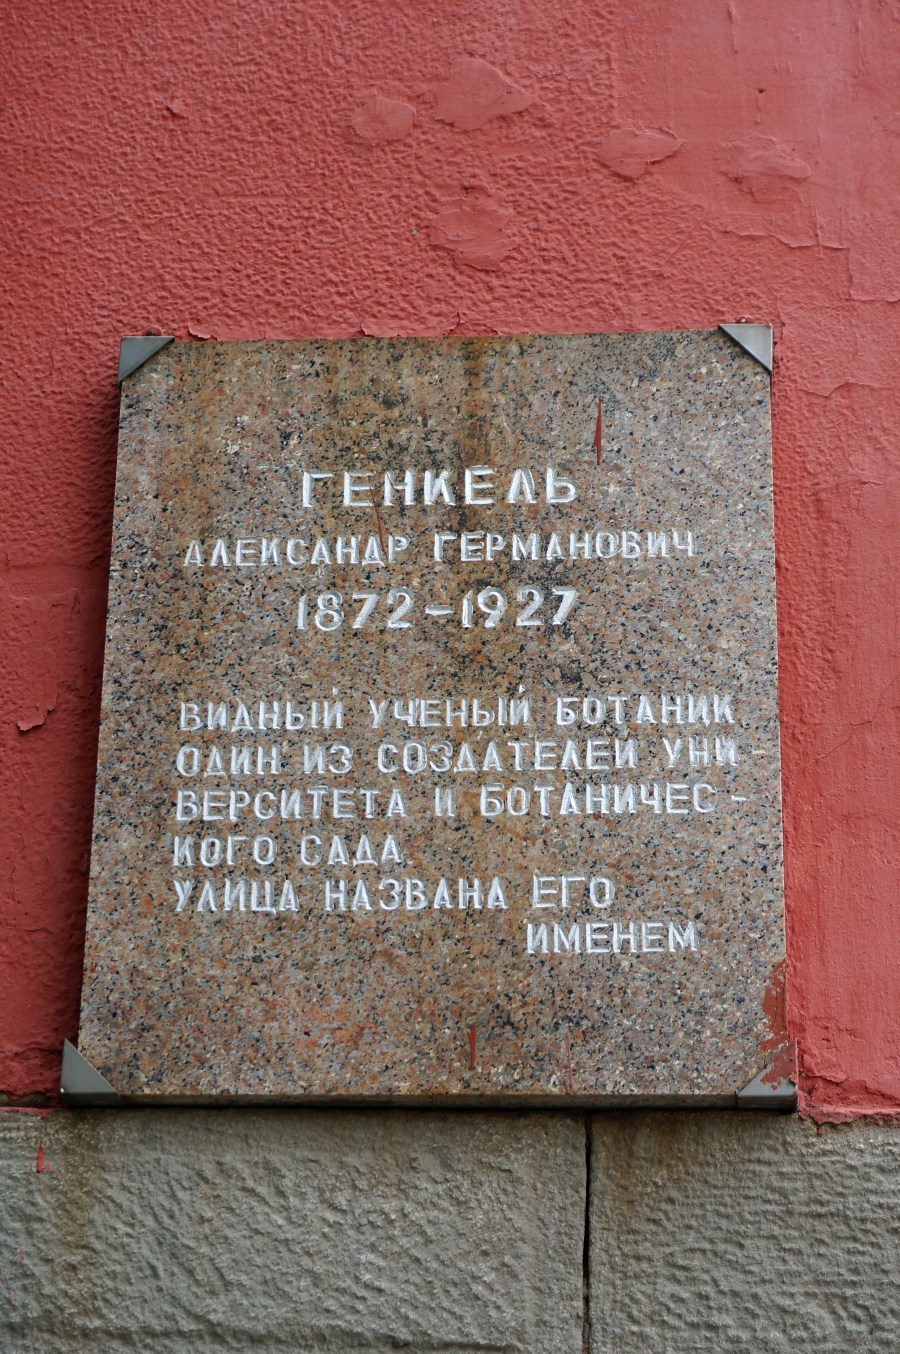 Perm, Улица Генкеля, 7. Perm — Memorial plaques